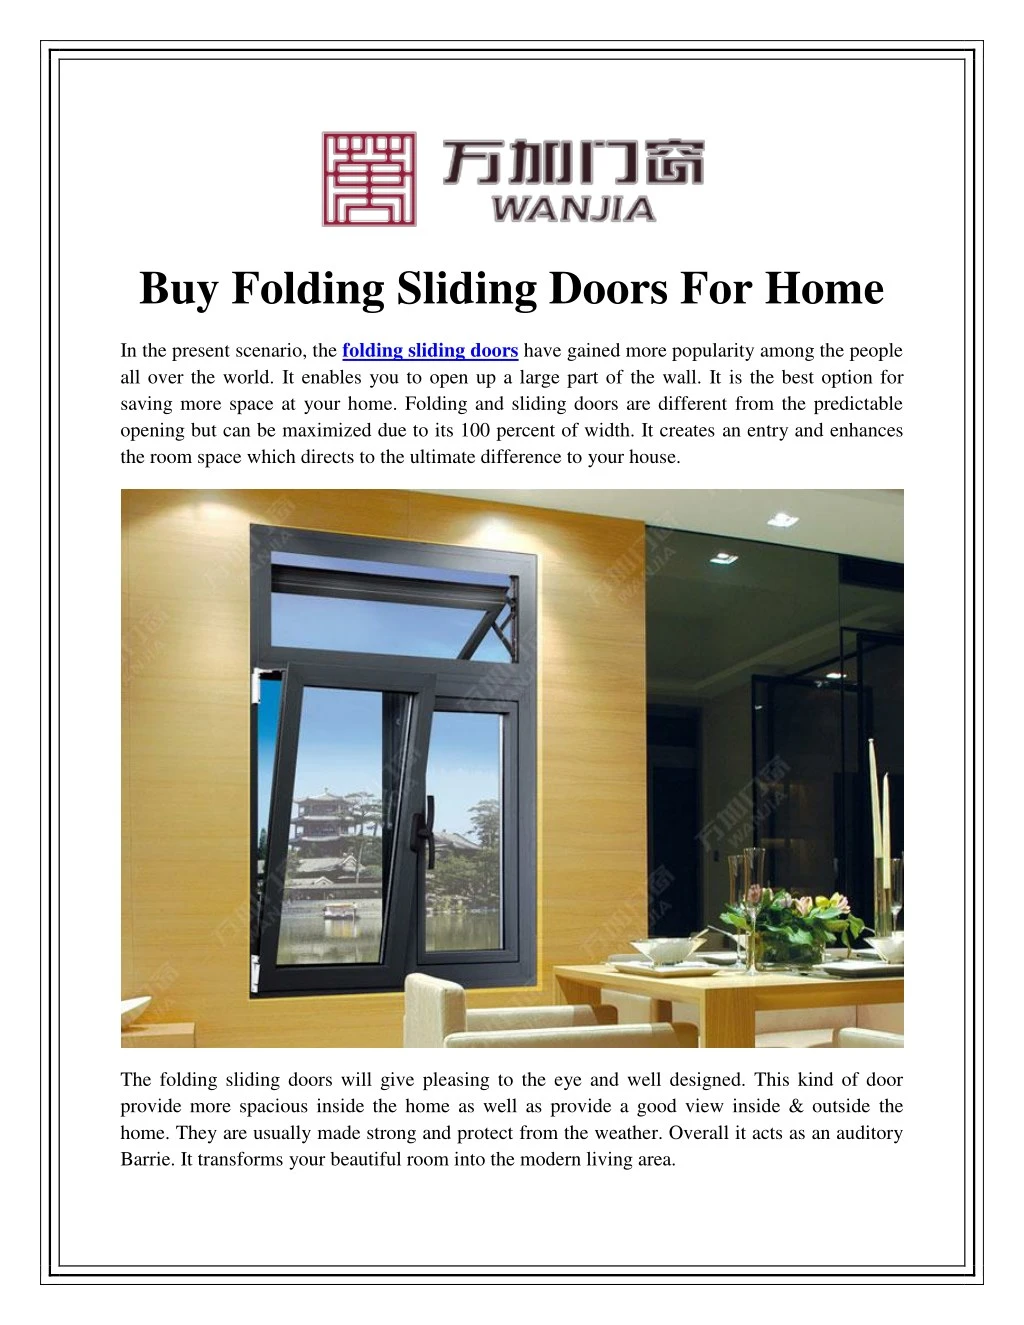 buy folding sliding doors for home